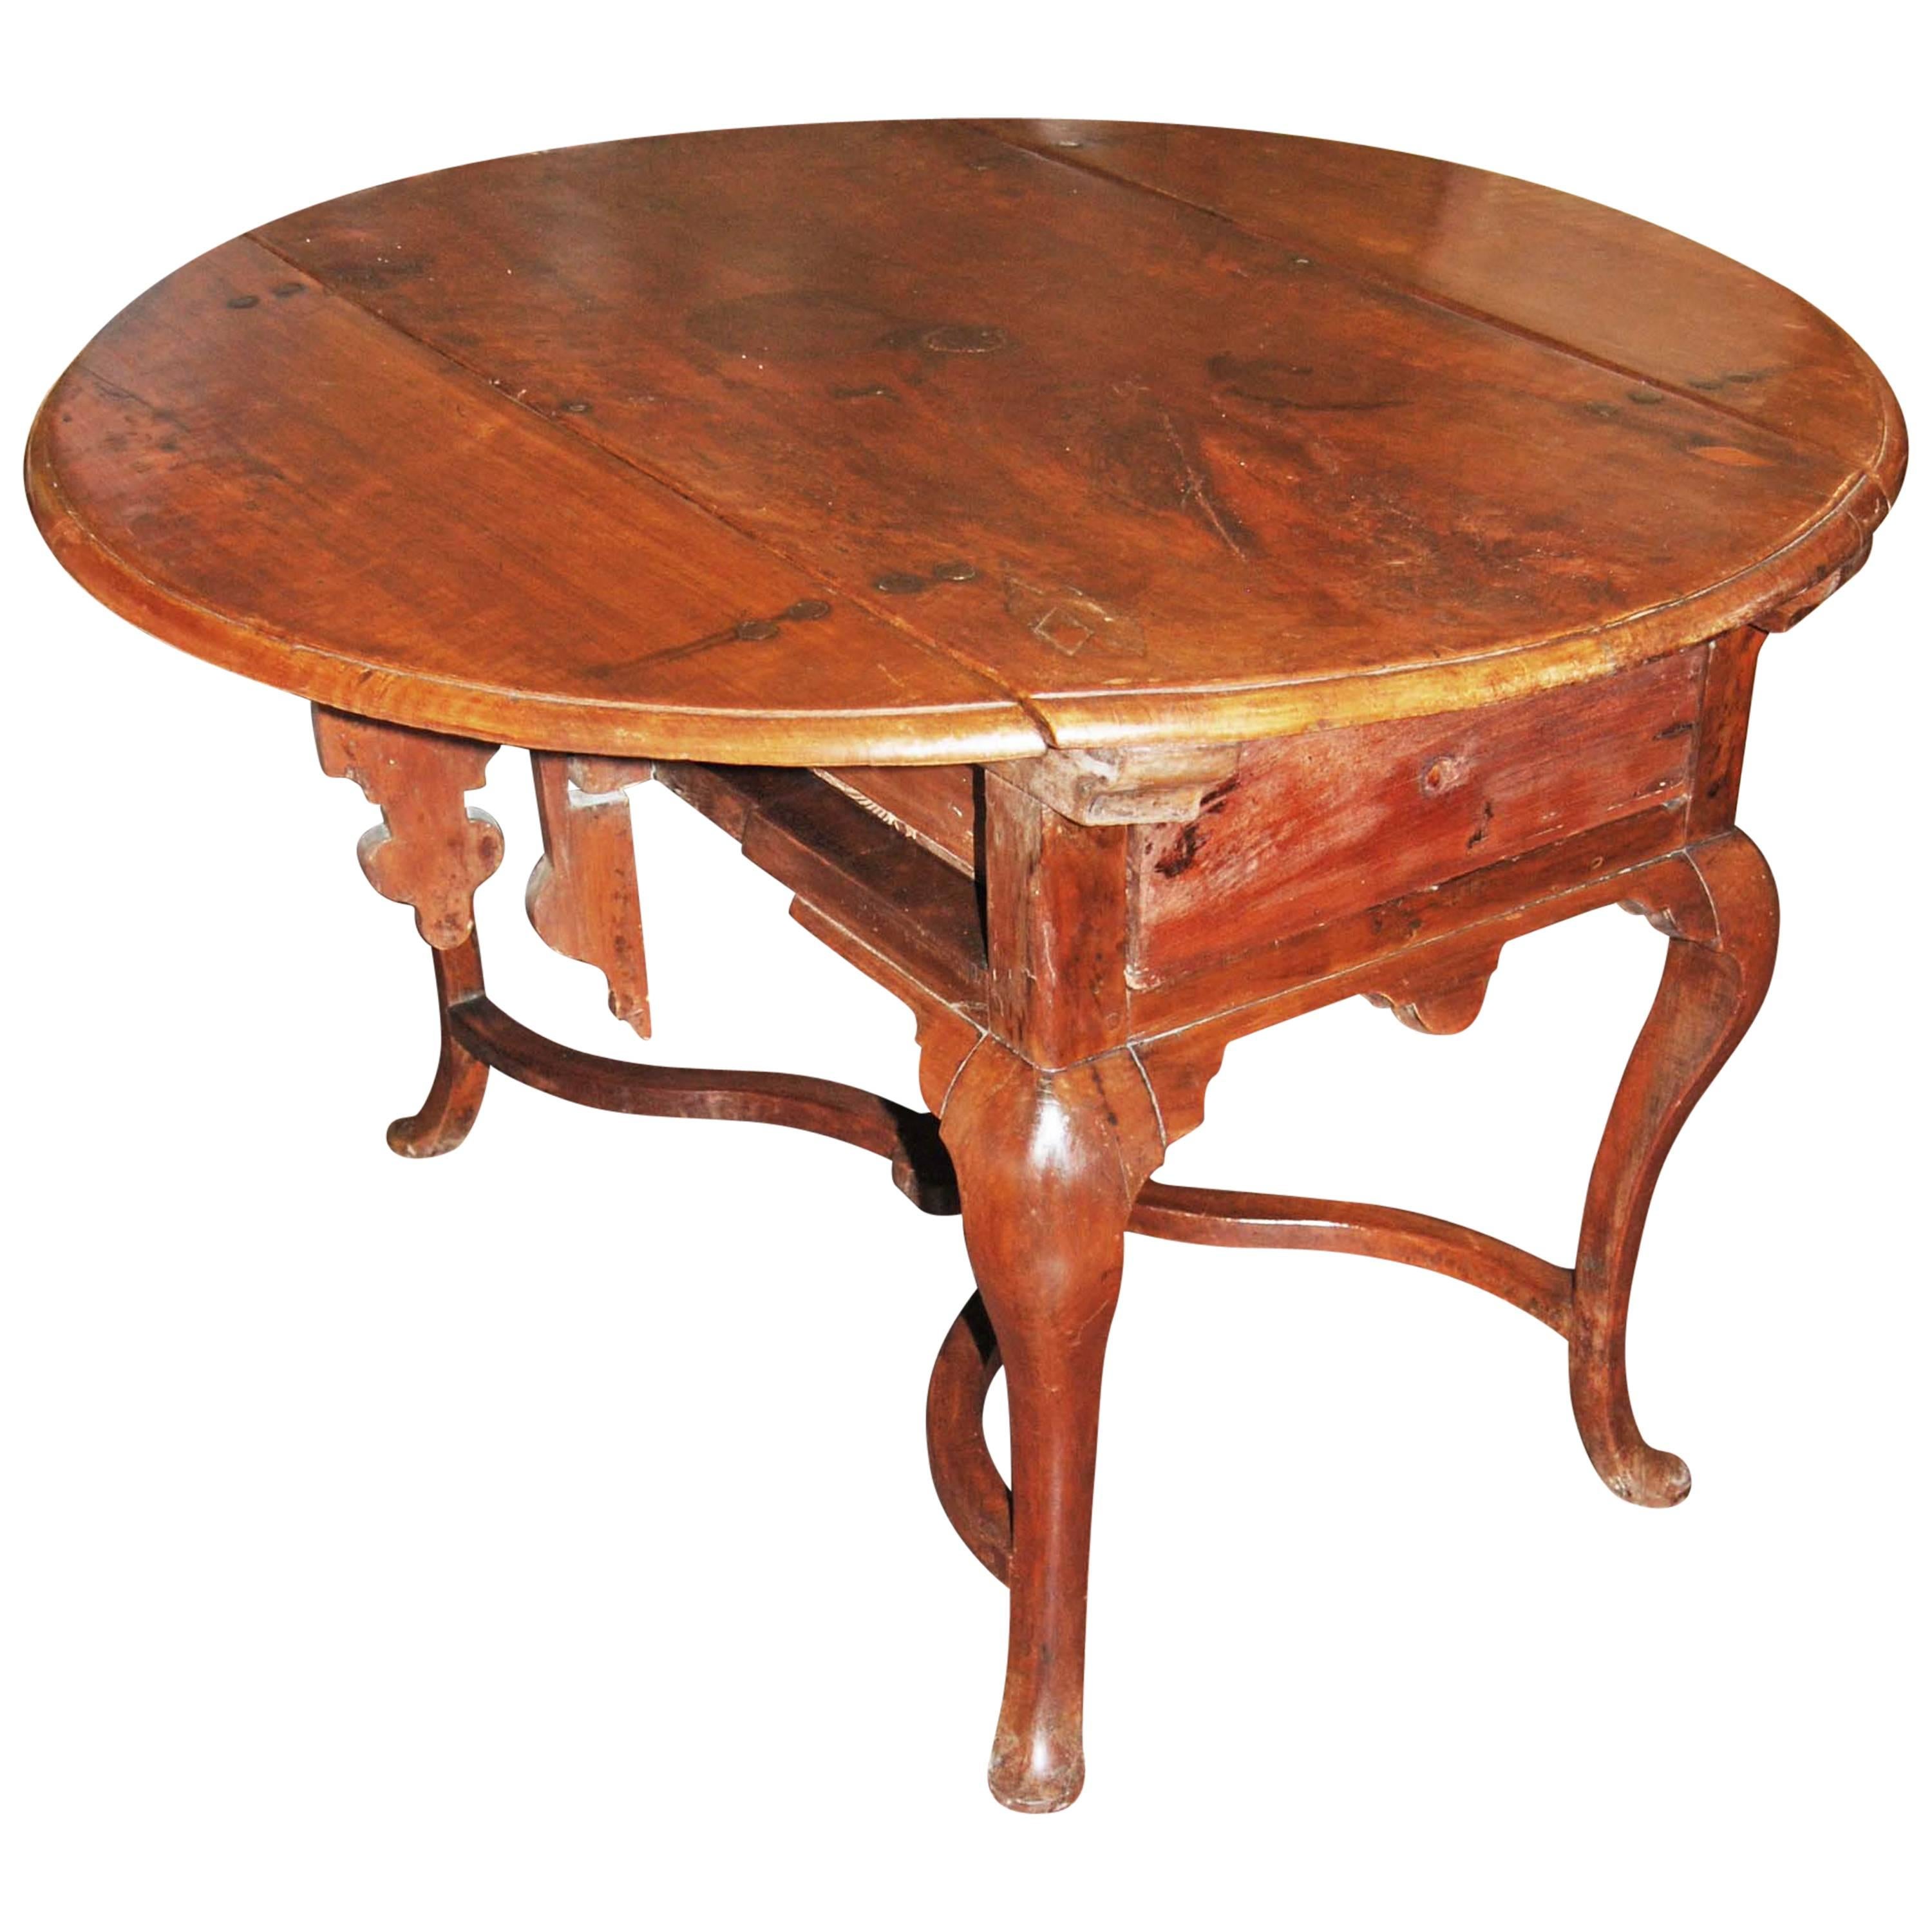 19th Century Walnut Drop Leaf Table